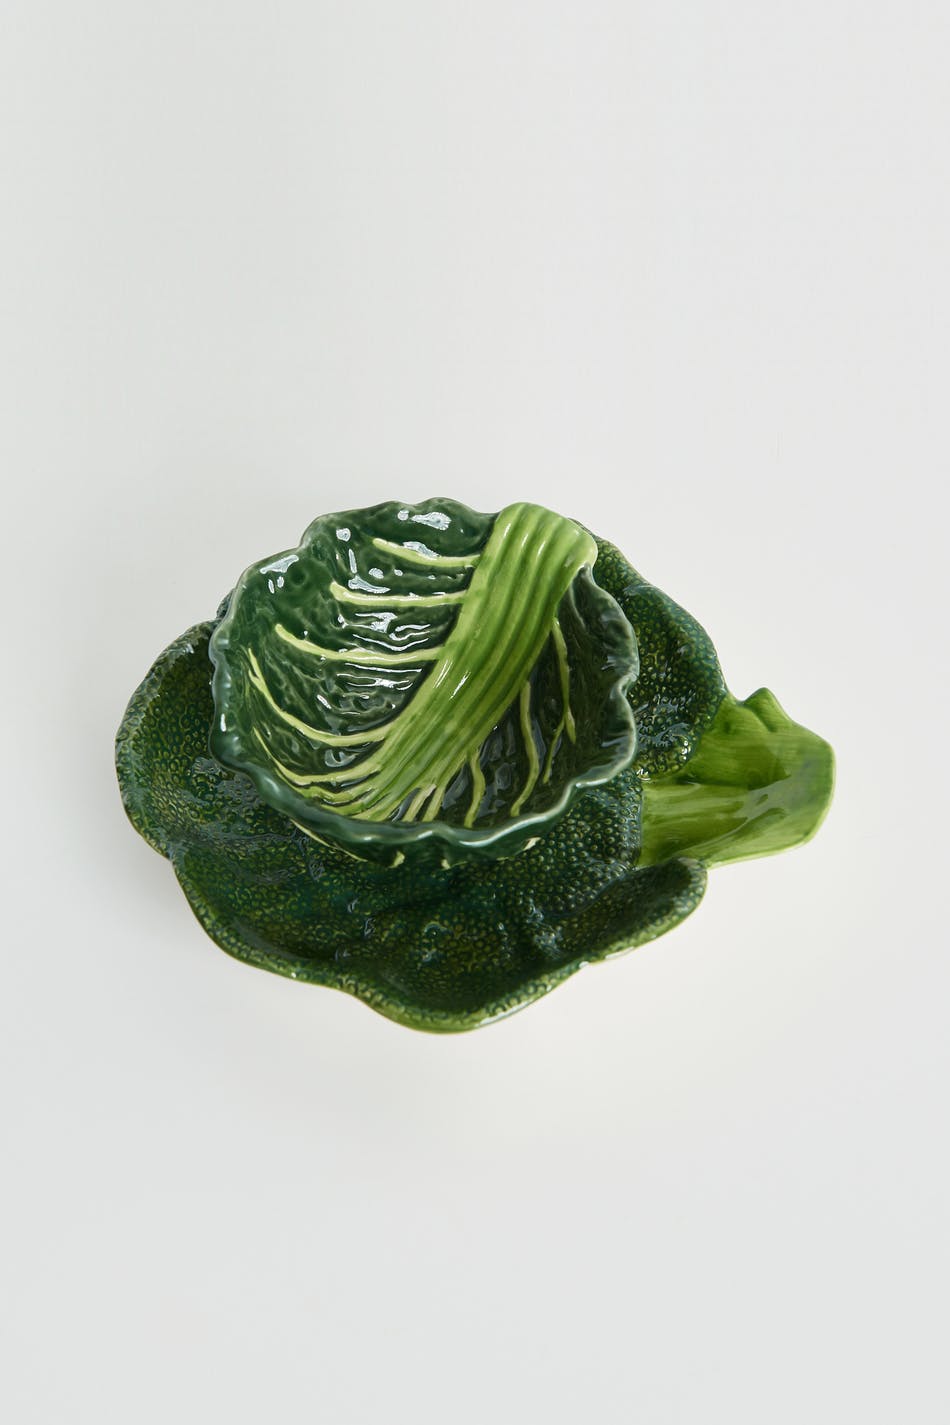 ByOn Cabbage M bowl